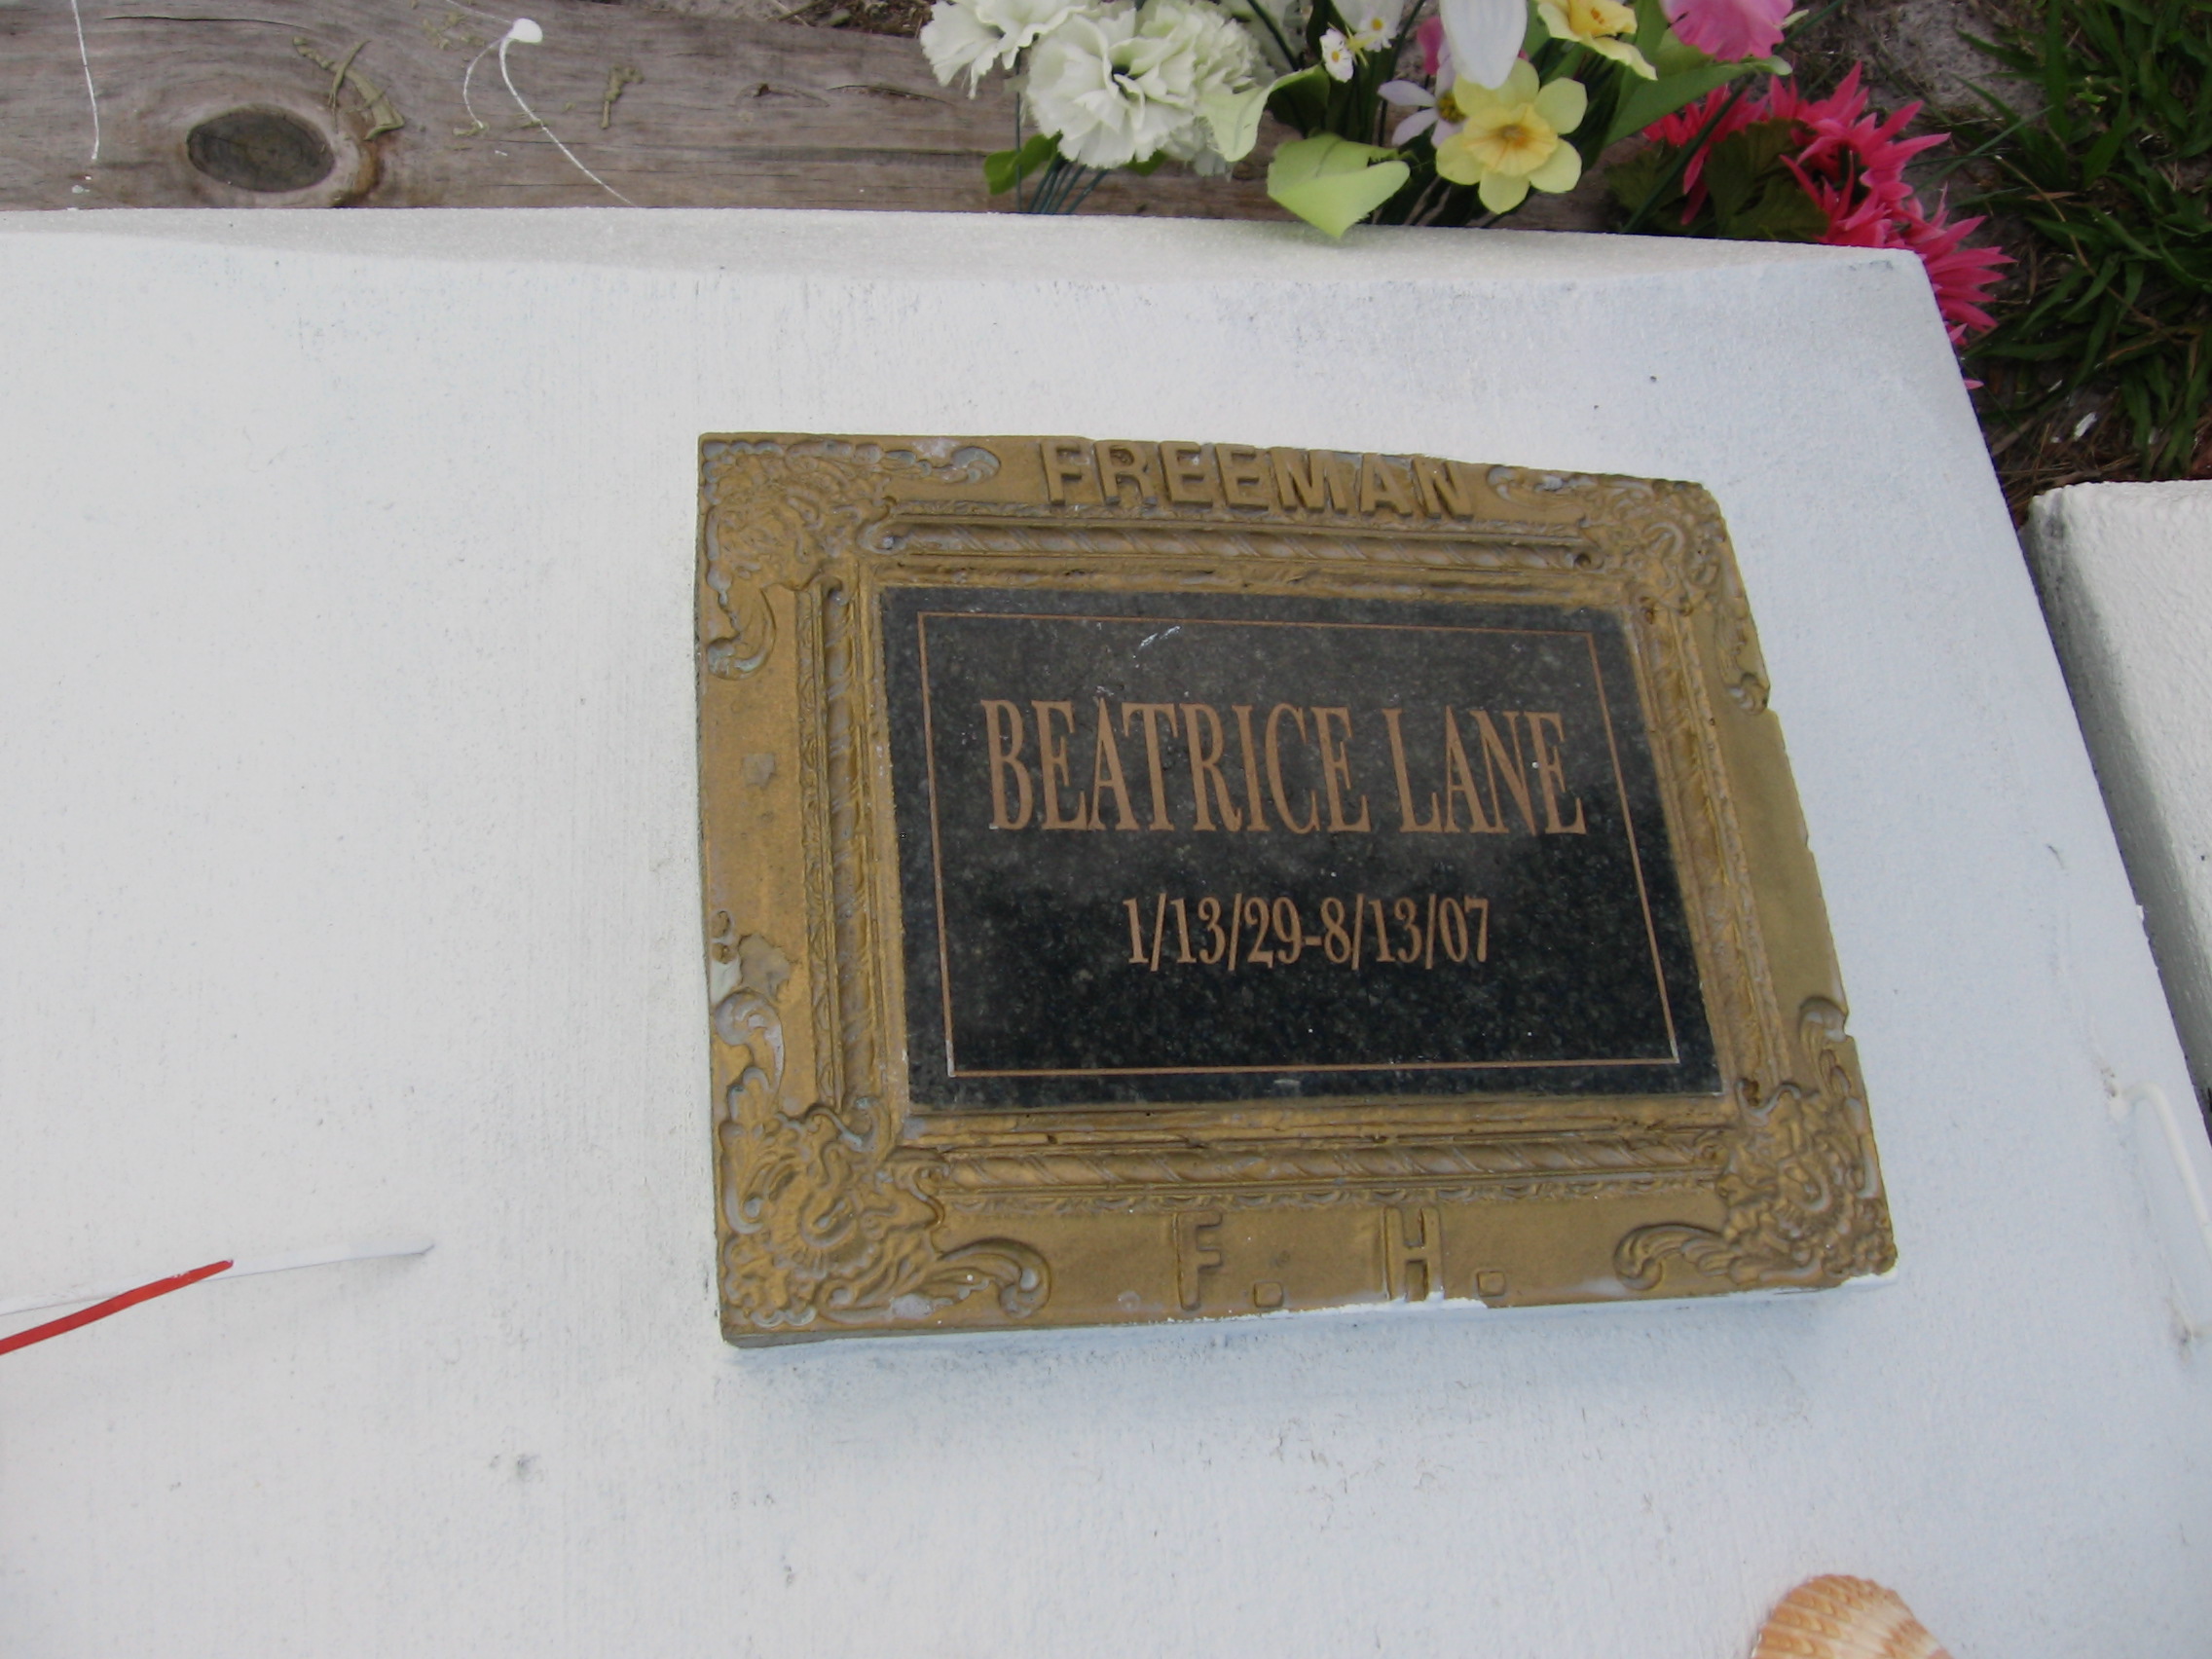 Beatrice Lane